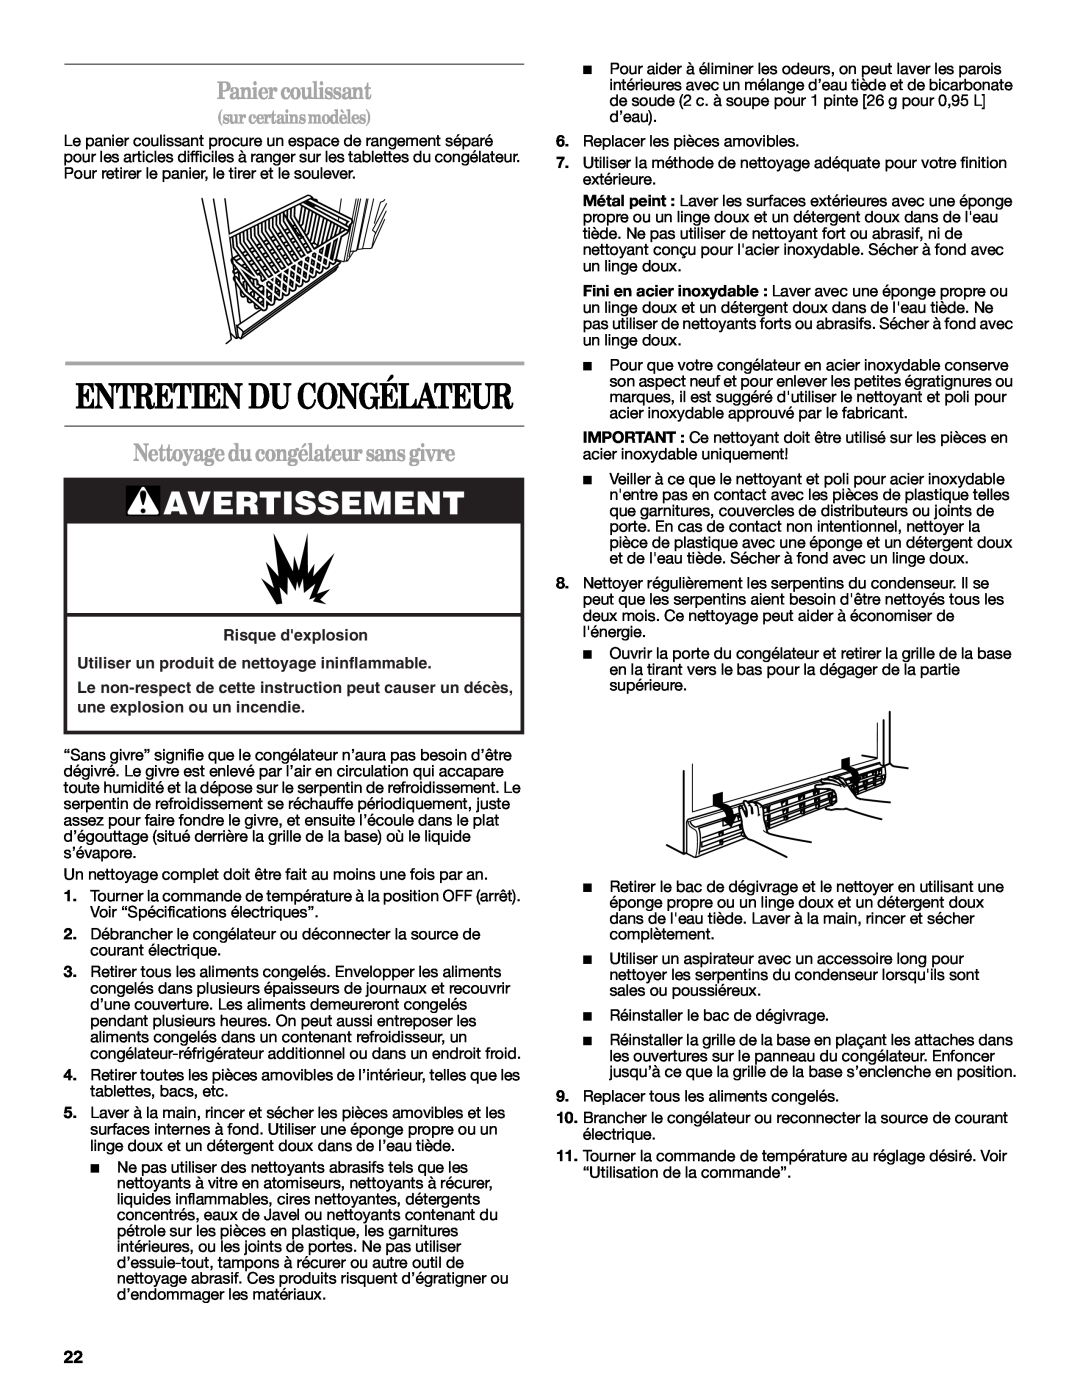 Whirlpool W10326801A manual Entretien Du Congélateur, Panier coulissant, Nettoyage du congélateur sans givre, Avertissement 